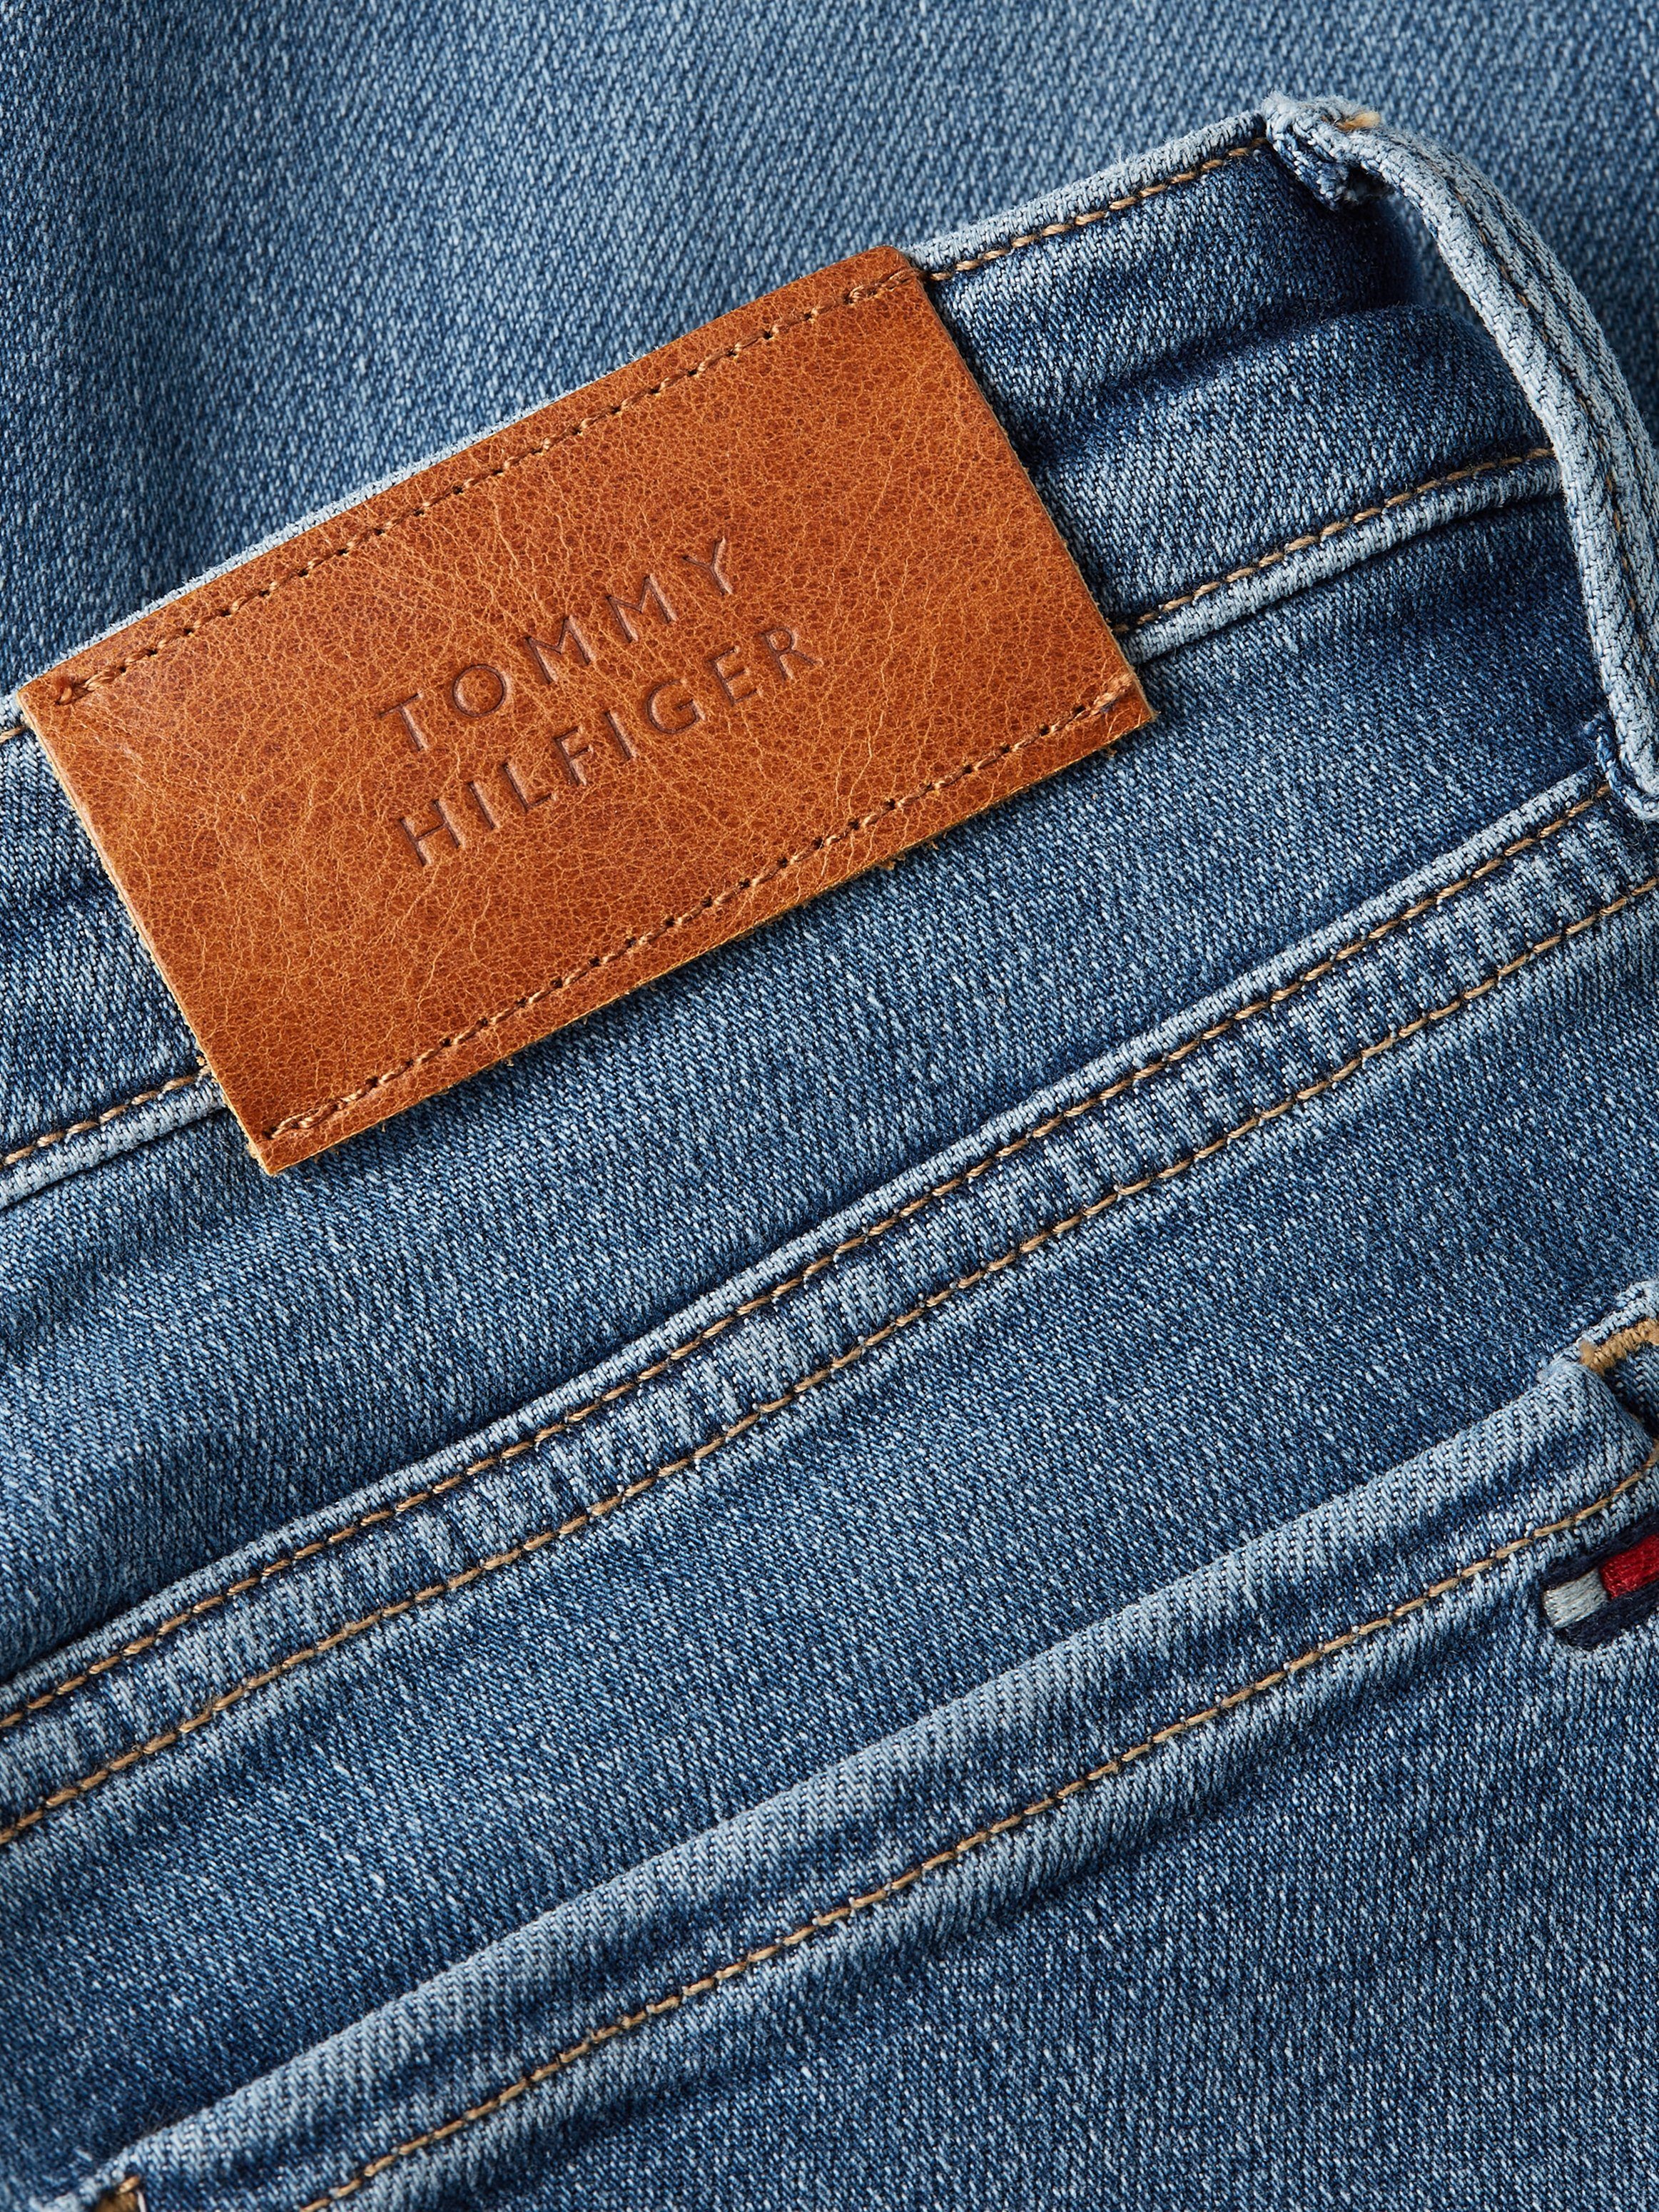 Tommy Hilfiger mit TH SKINNY Logo-Badge Skinny-fit-Jeans RW Hilfiger FLEX COMO GYA Mel Tommy